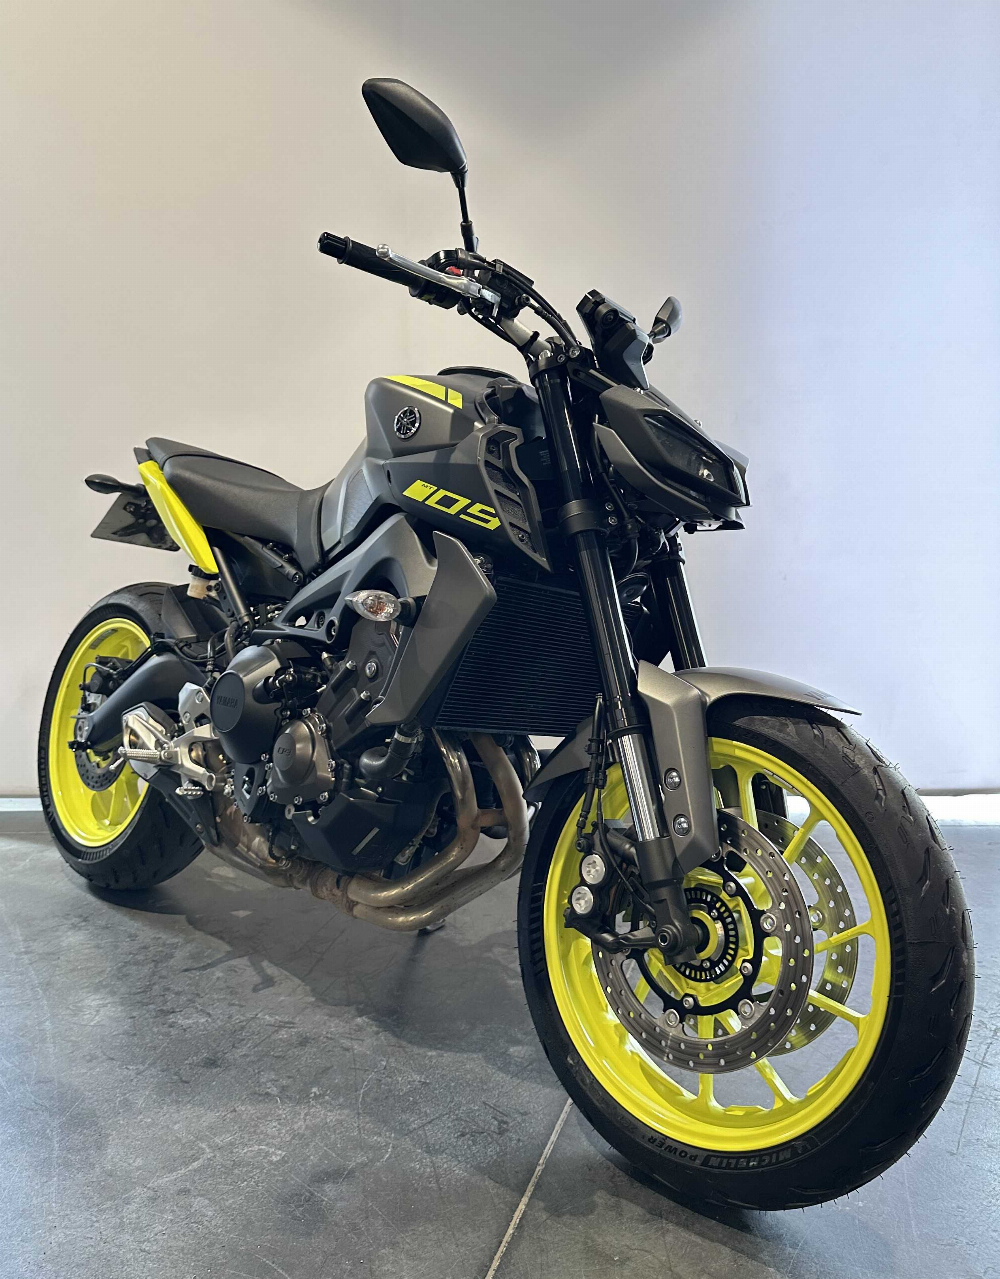 Yamaha MT-09 850 ABS 2018 vue 3/4 droite